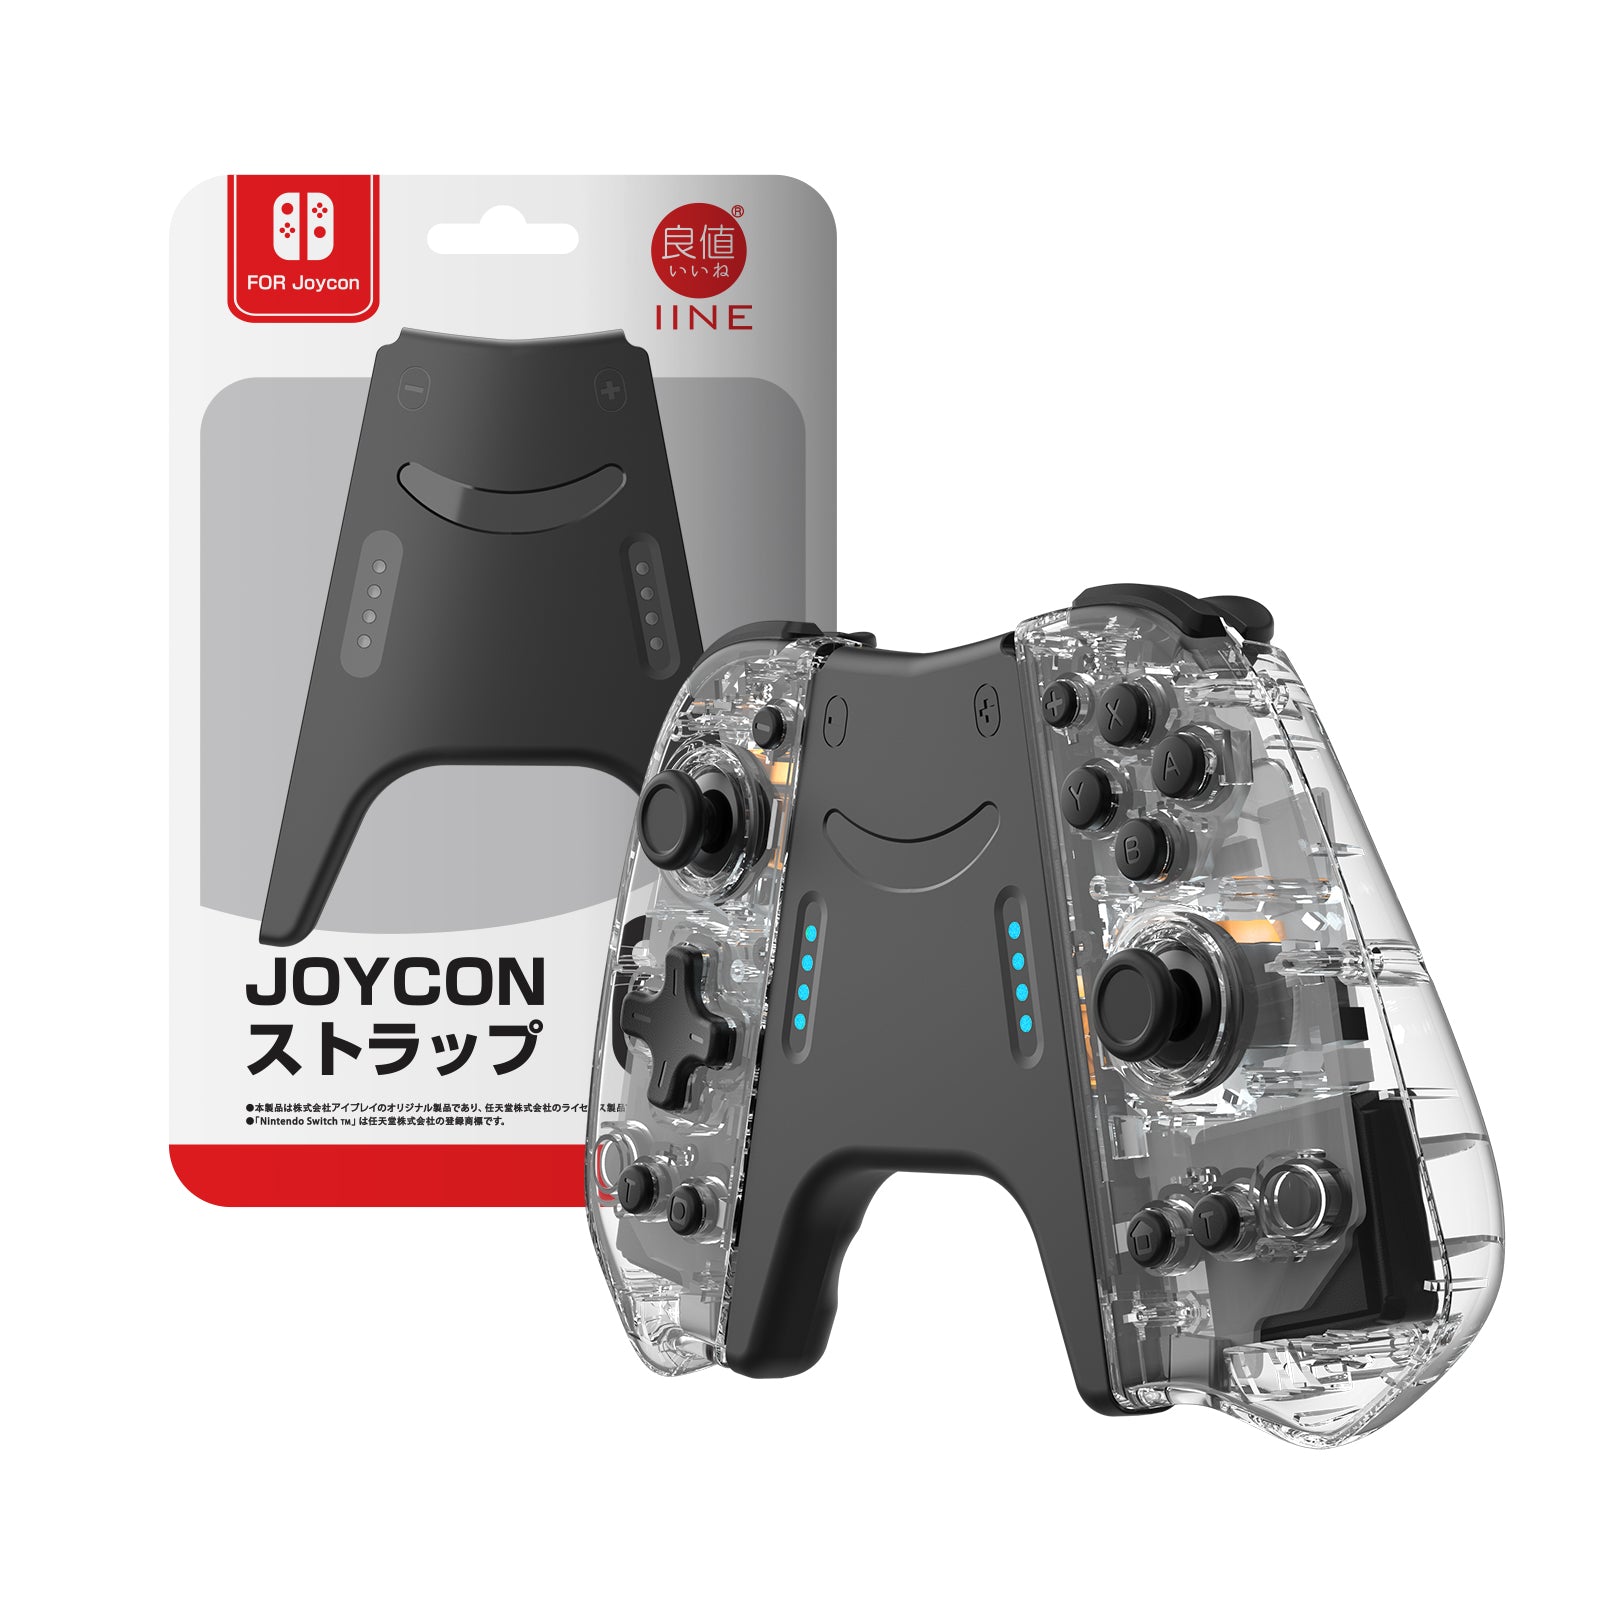 IINE Nintendo Store – Joypad Elite IINE Official Switch